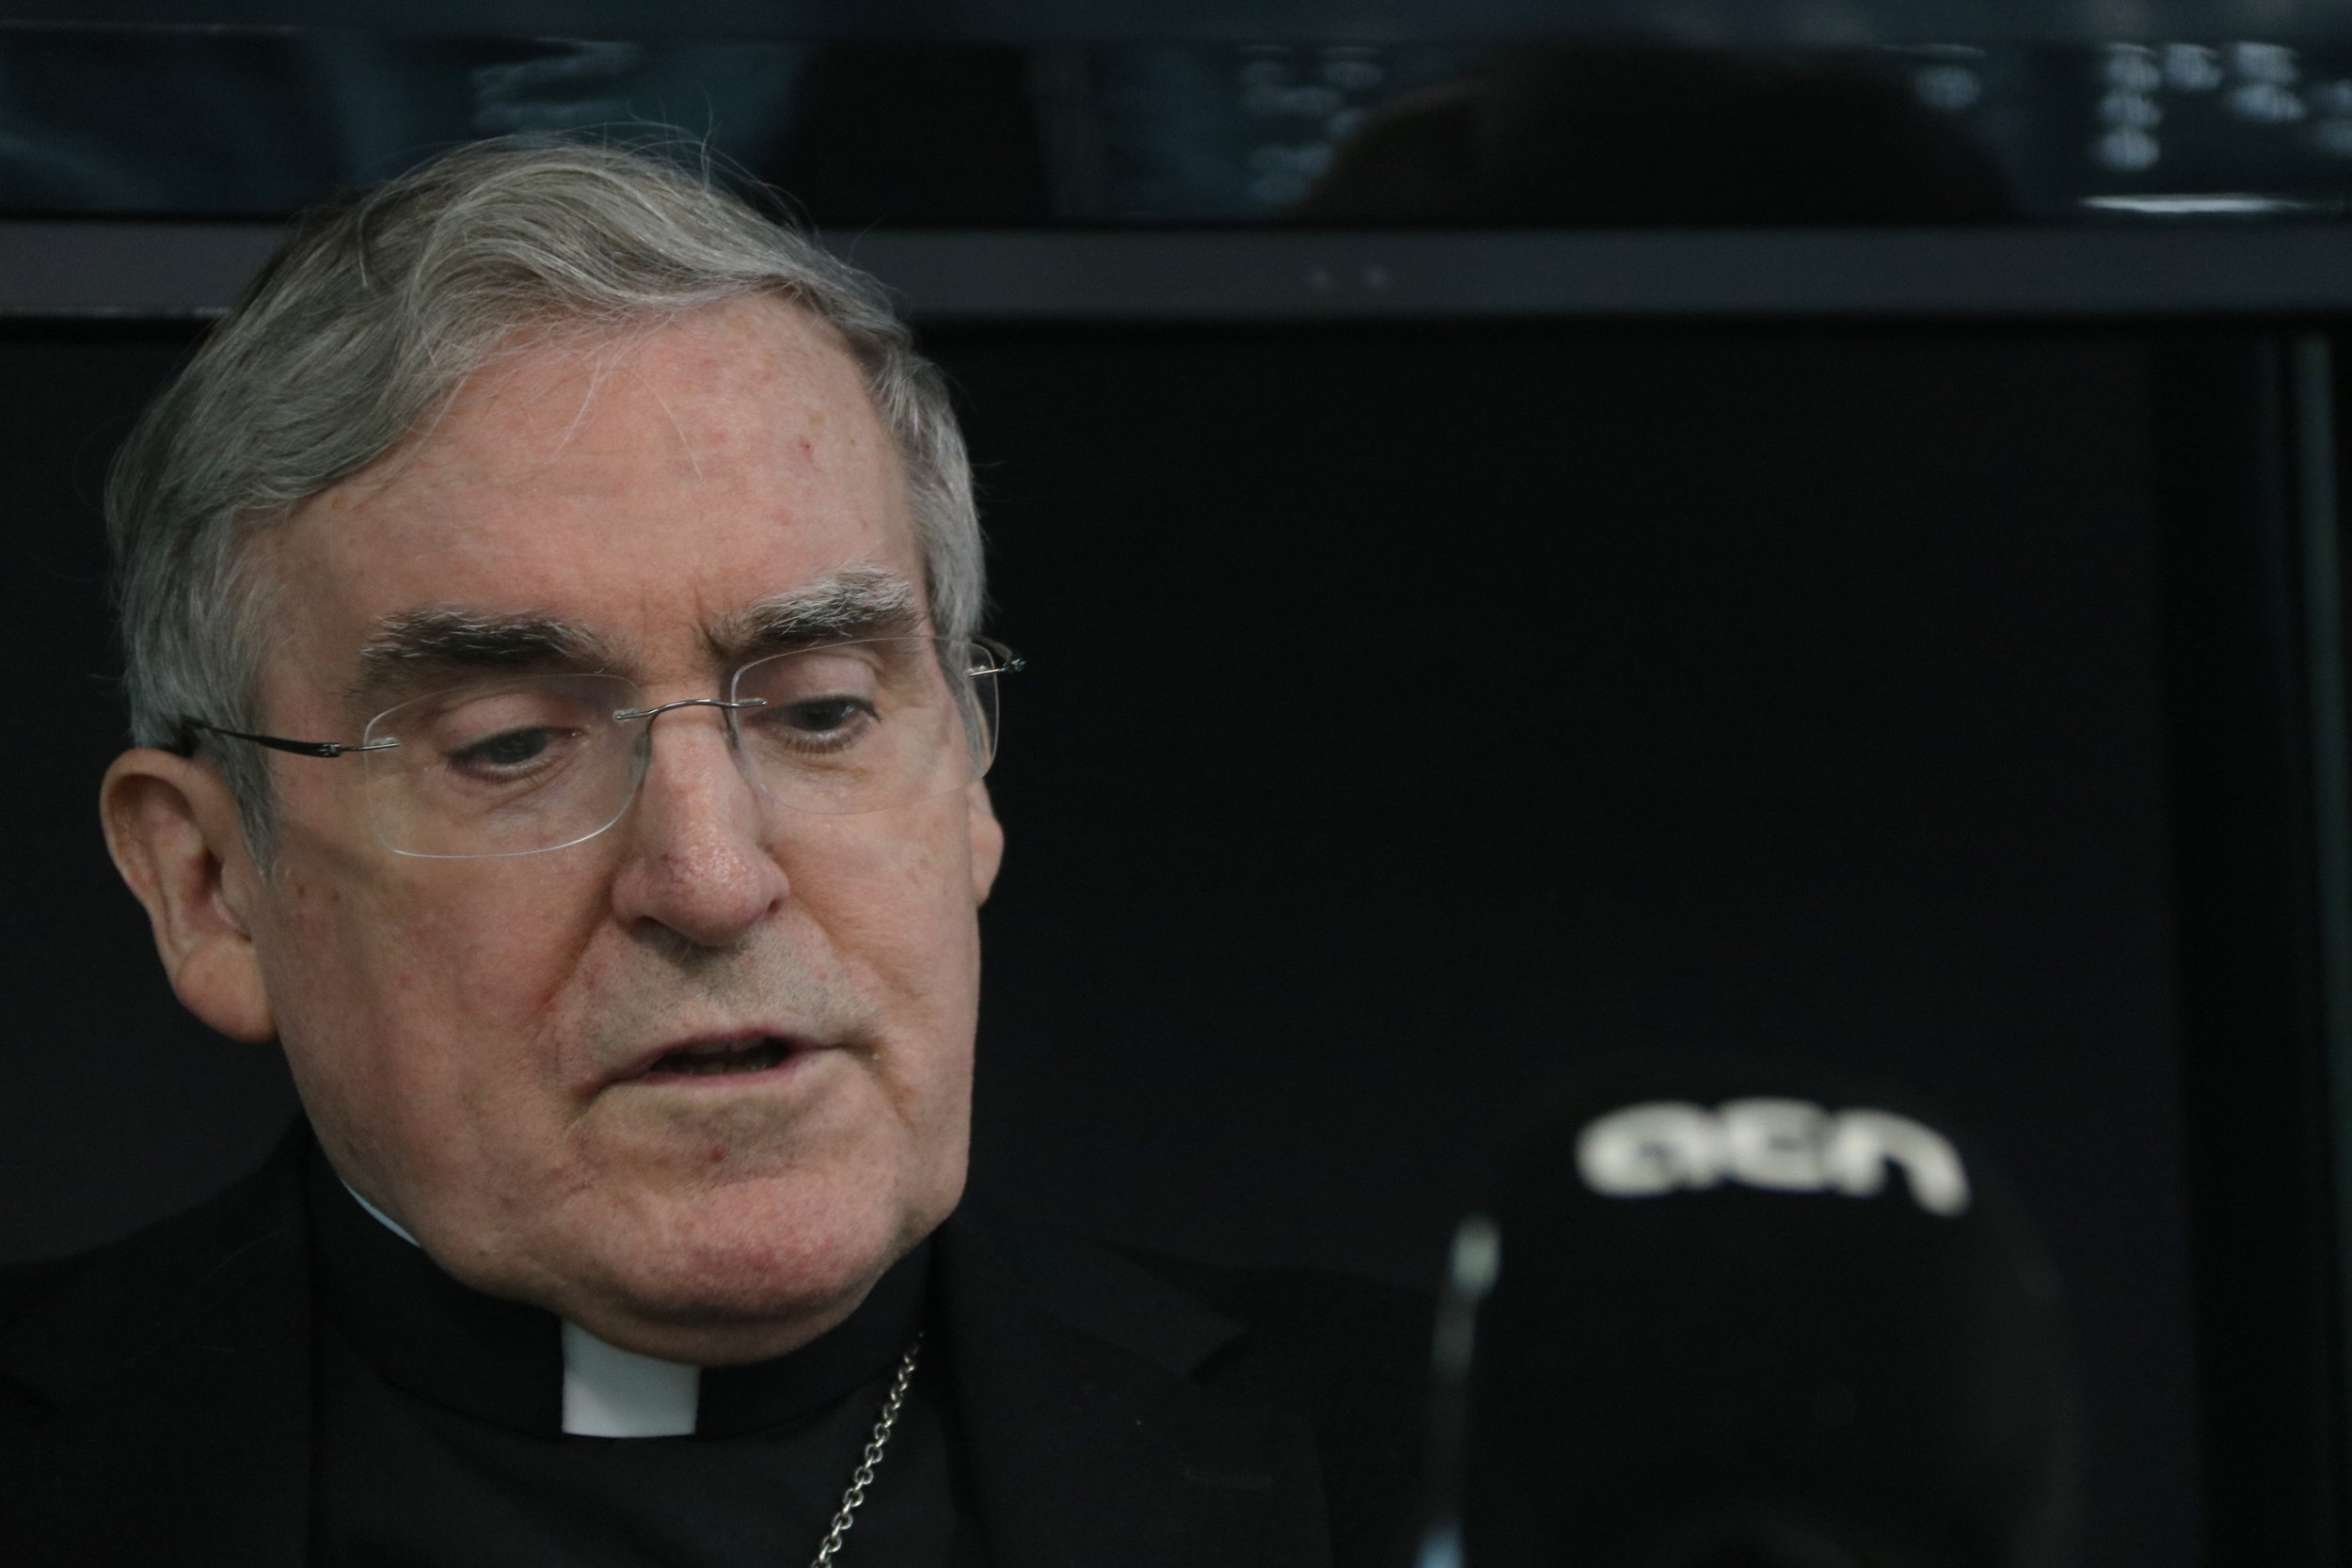 El cardenal Sistach considera "dolorosa" la prisión preventiva de los políticos